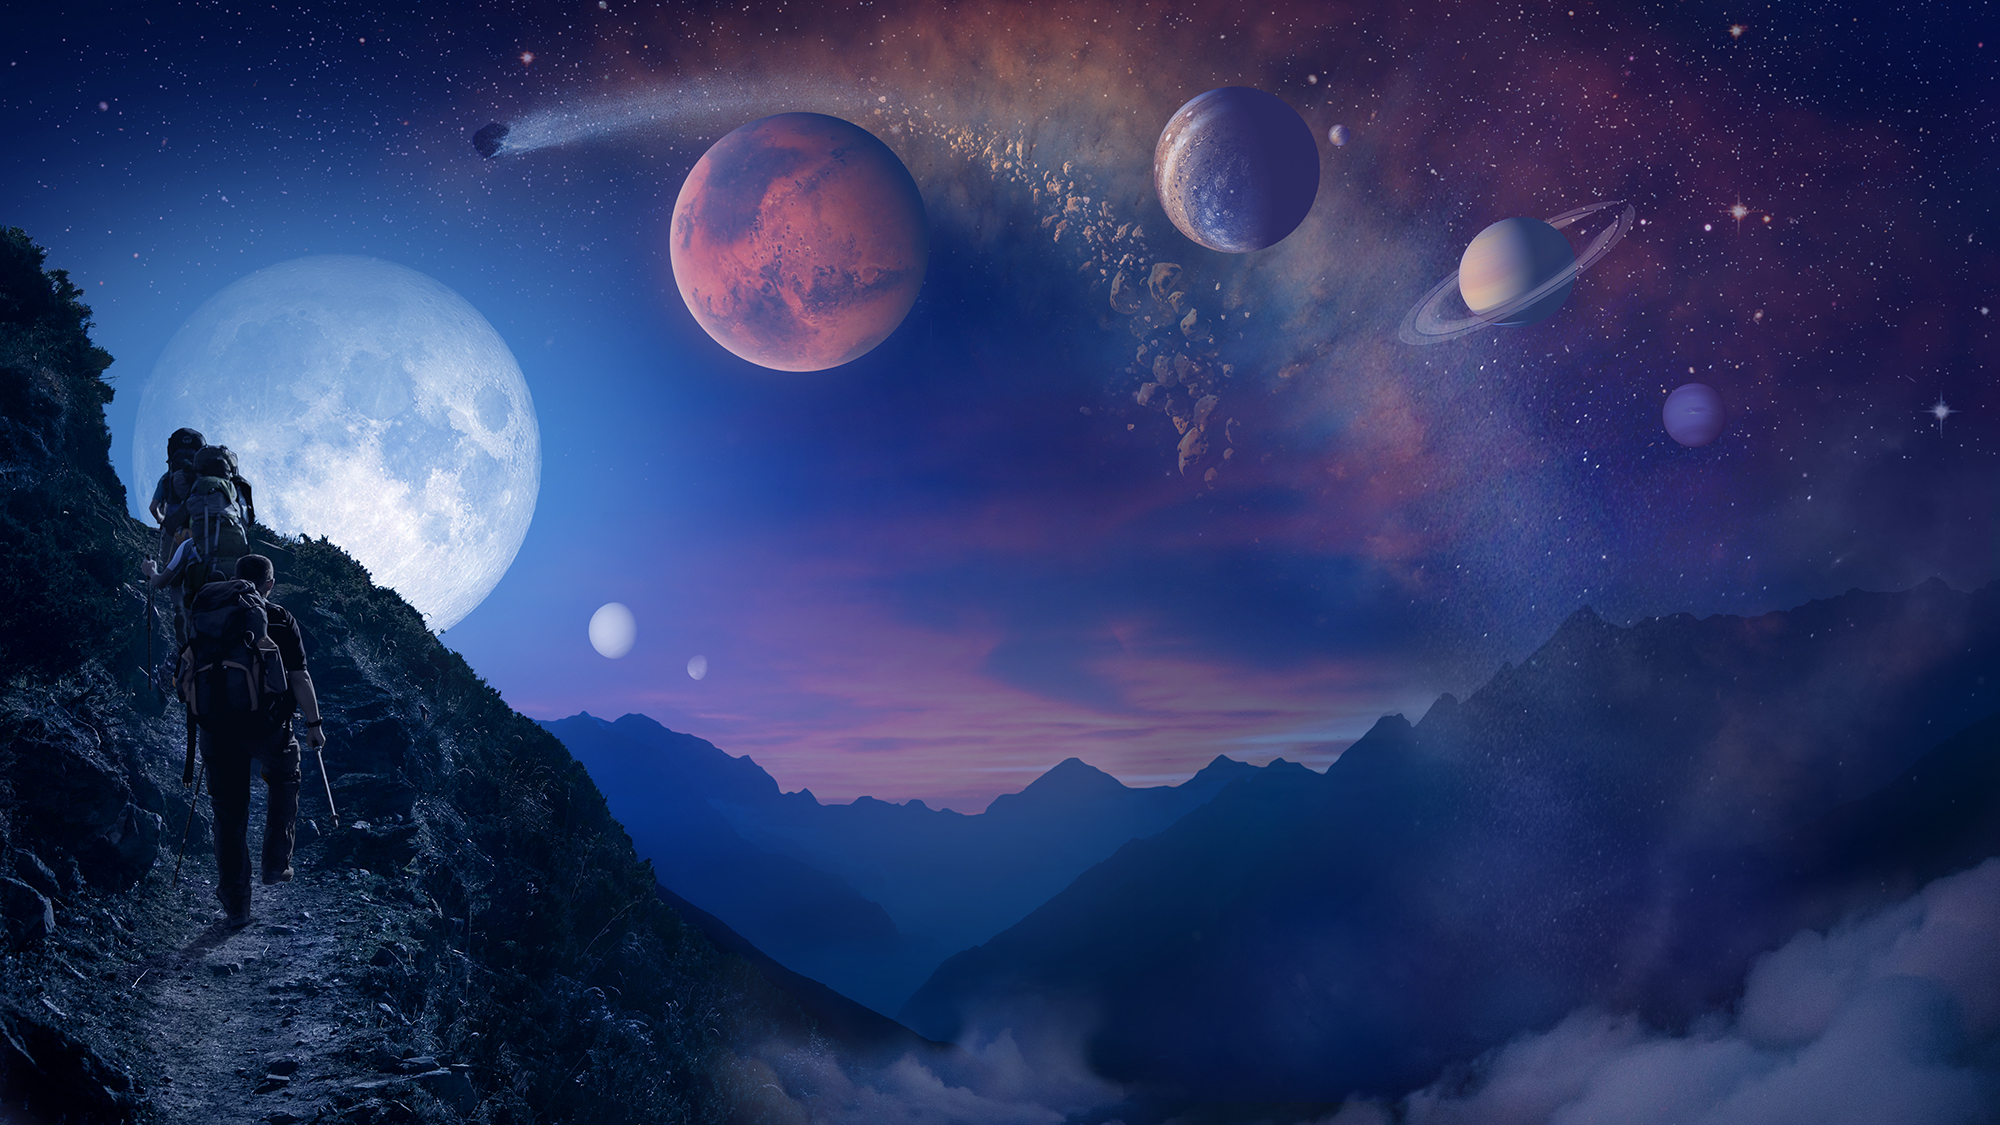 徒步旅行者登上左侧岩石峭壁的插图，太阳系的行星在天空中呈大弧形分布